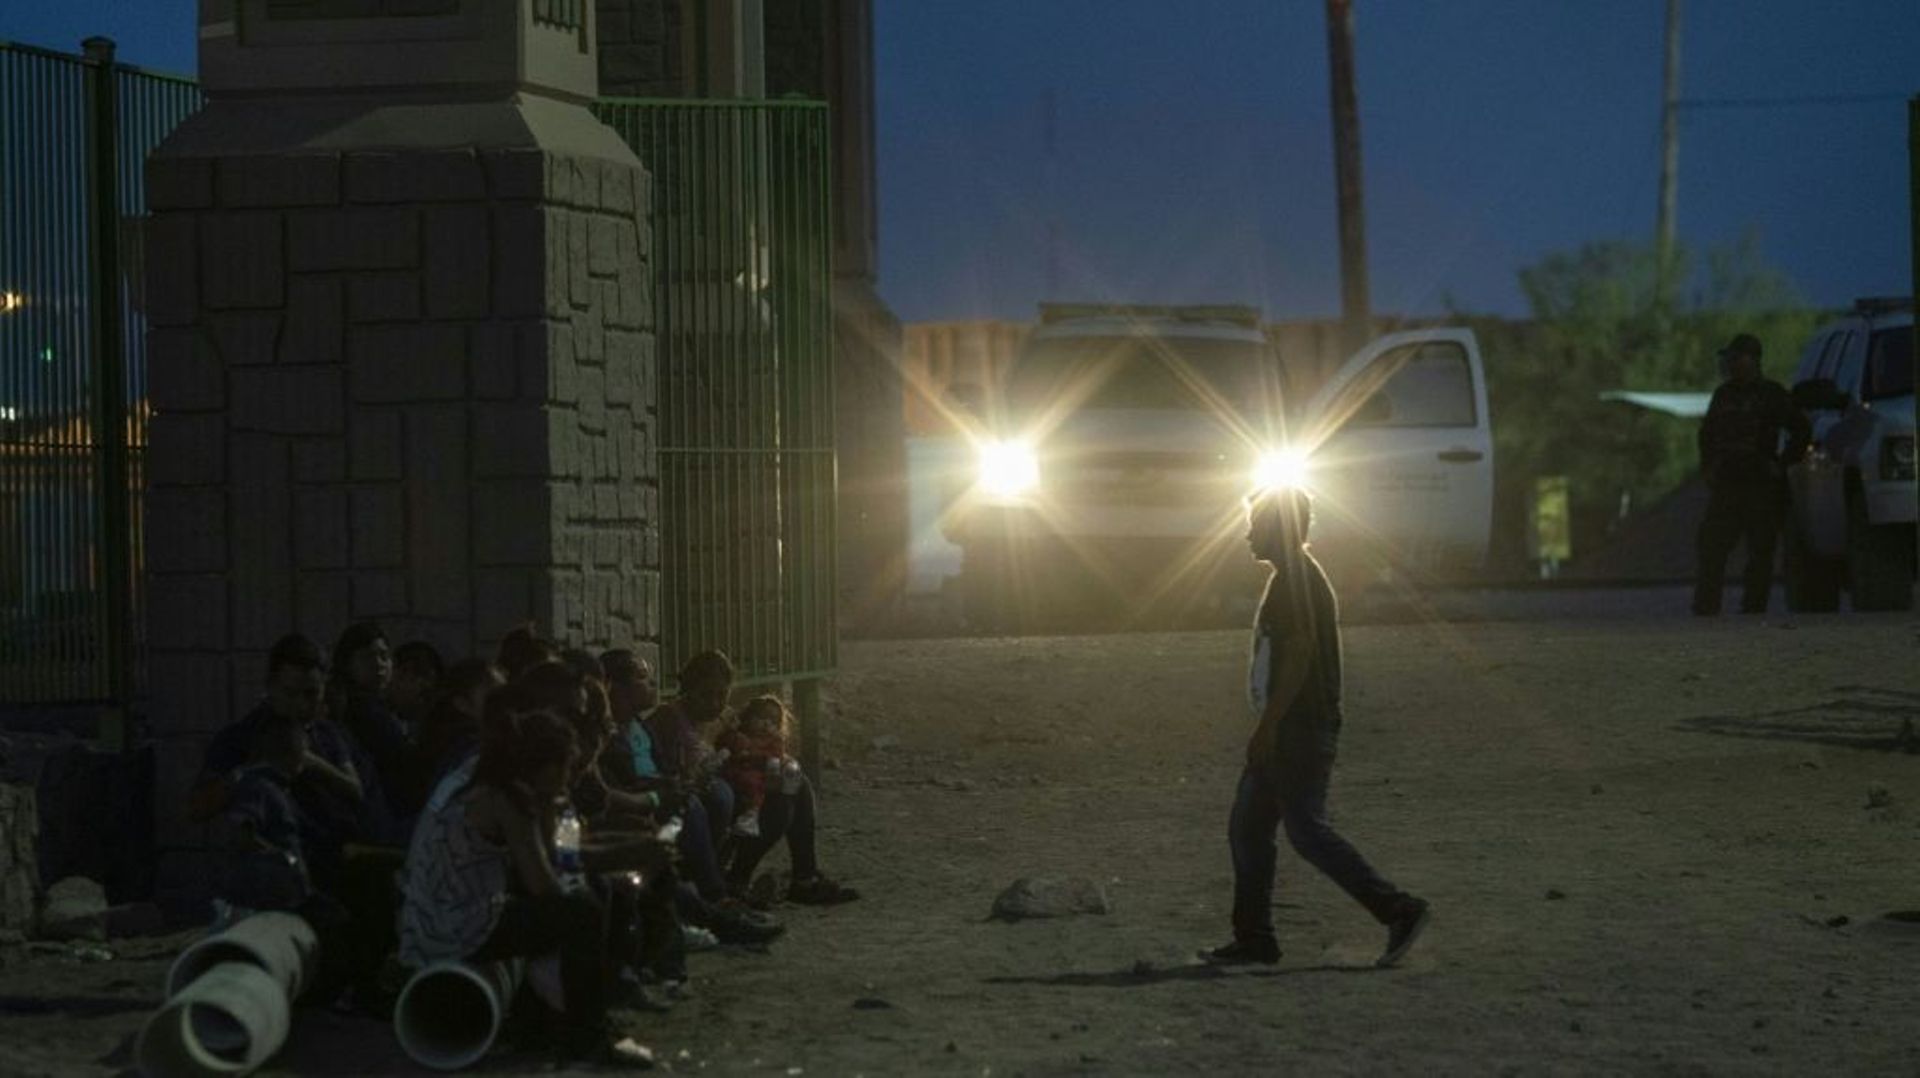 Des migrants en attente d'être pris en charge à El Paso, aux Etats-Unis, le 31 mai 2019
